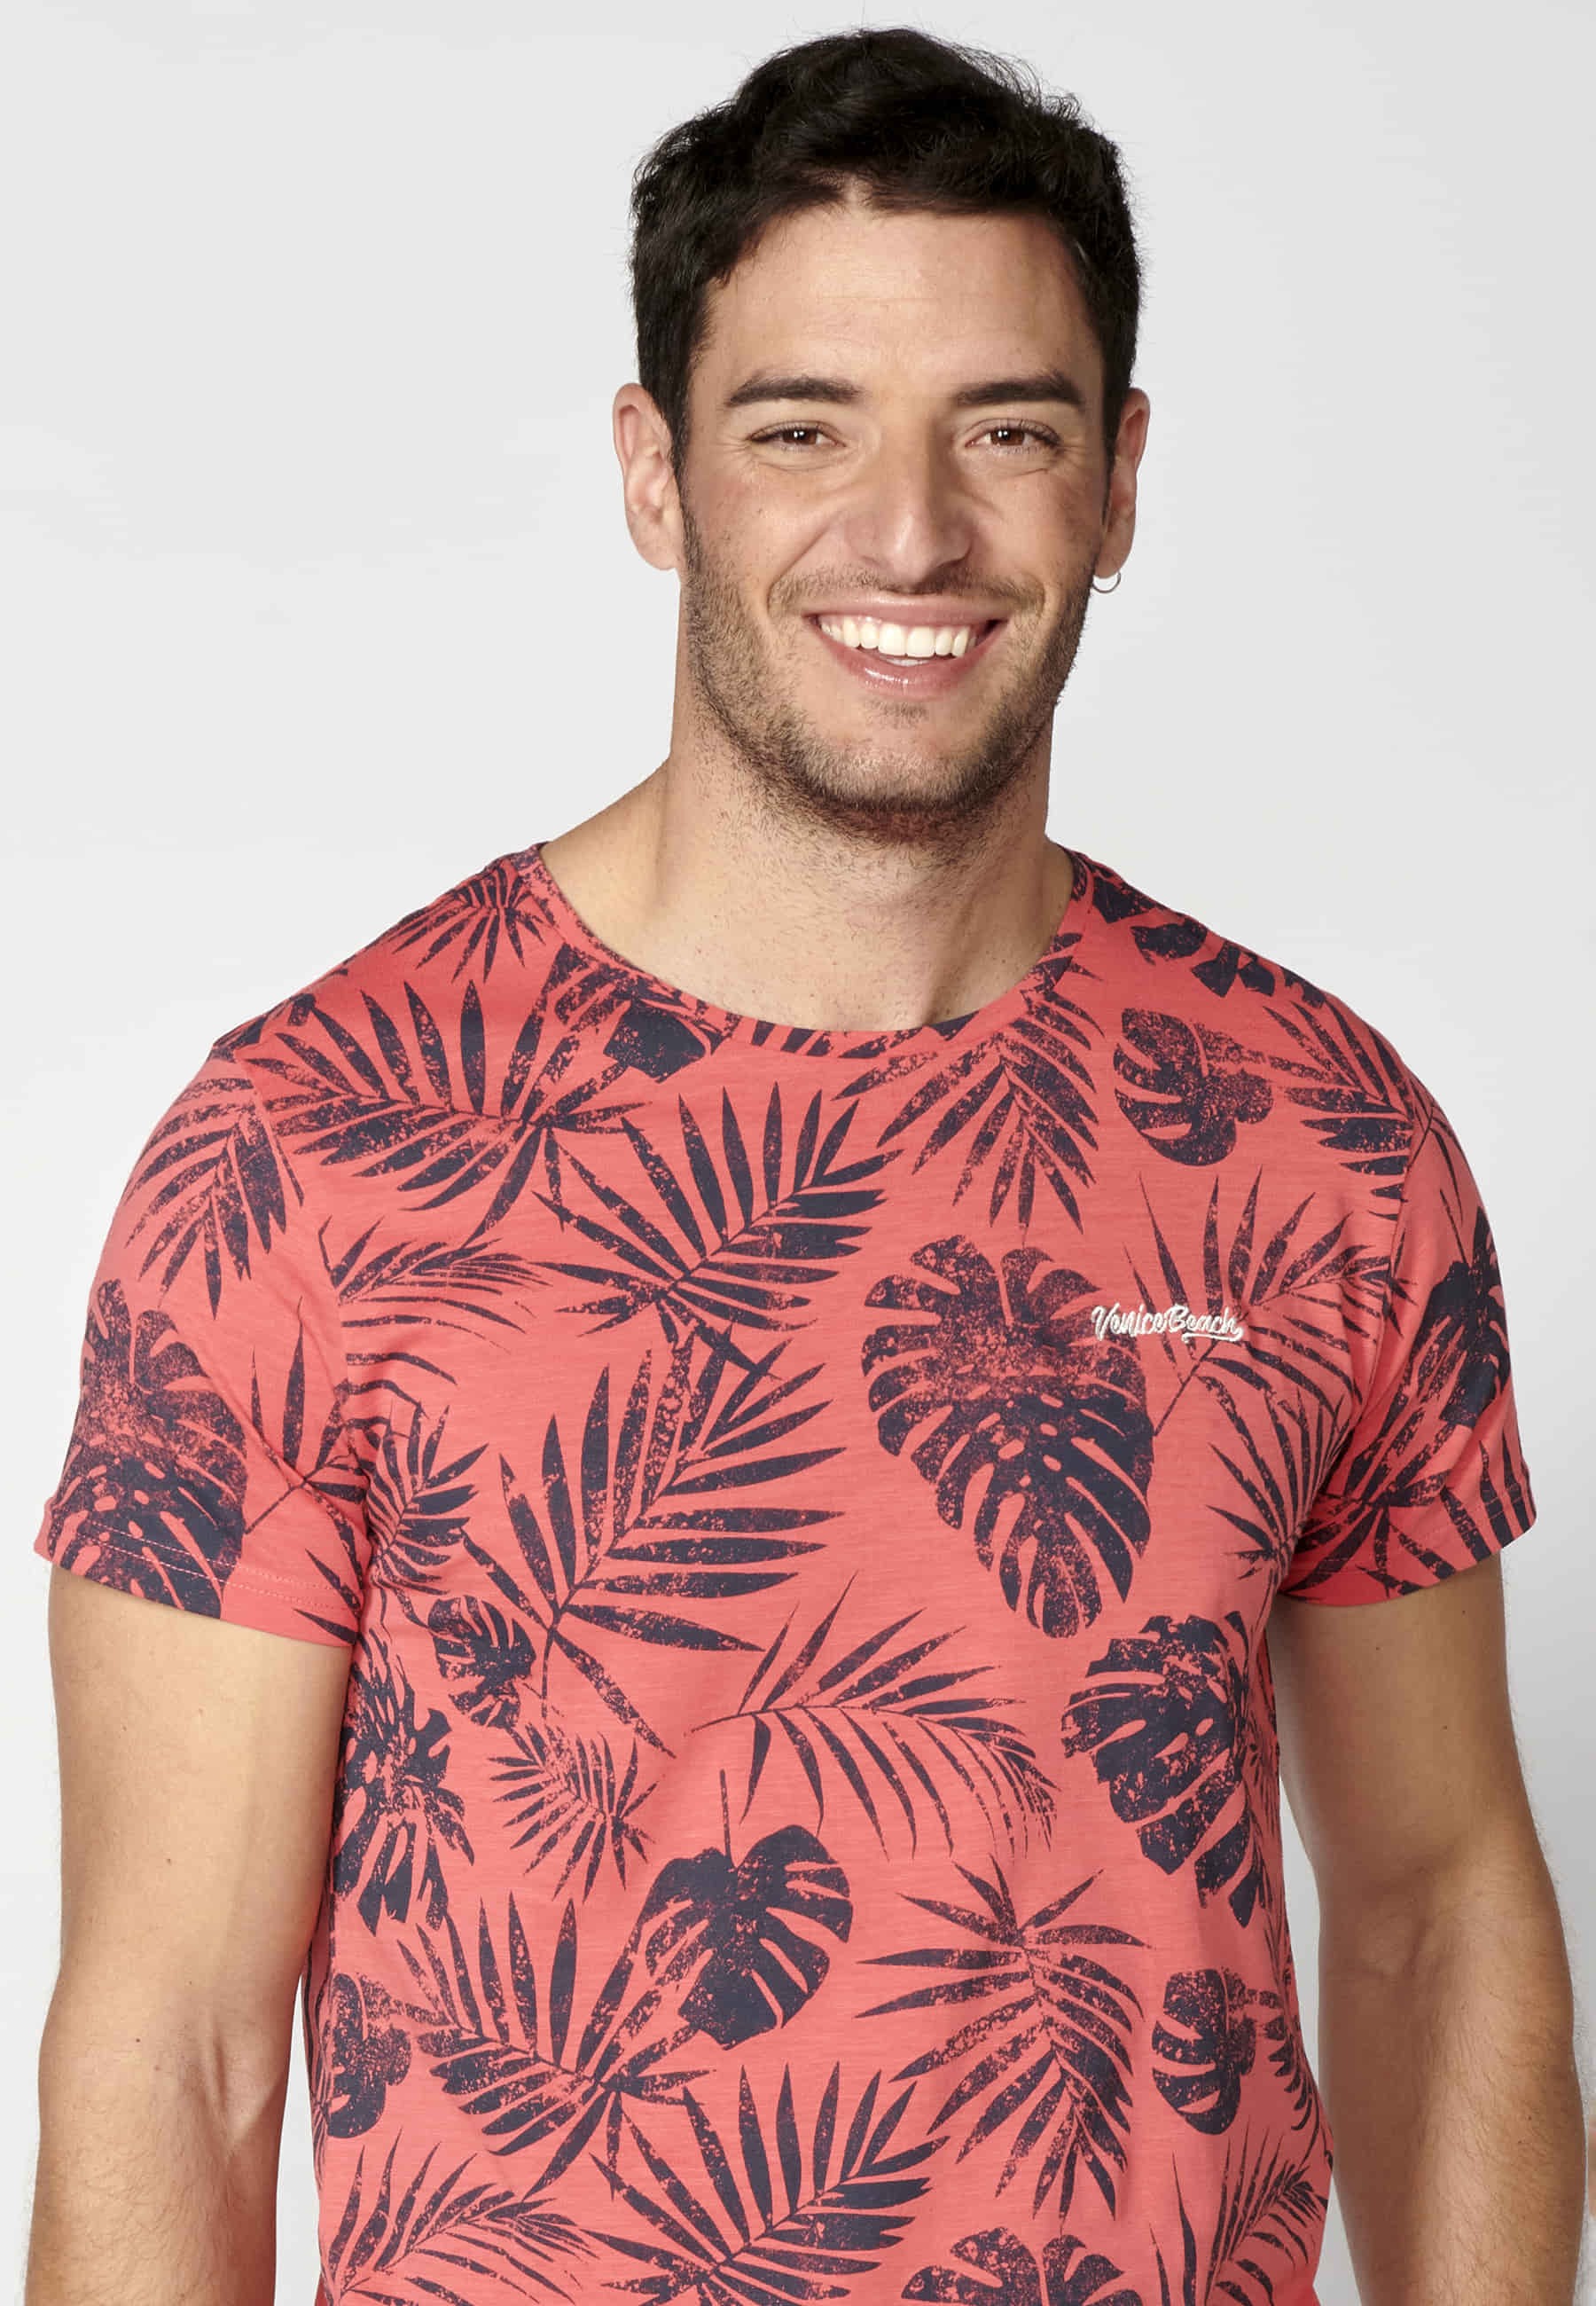 Men's Coral Color Cotton Short Sleeve T-shirt